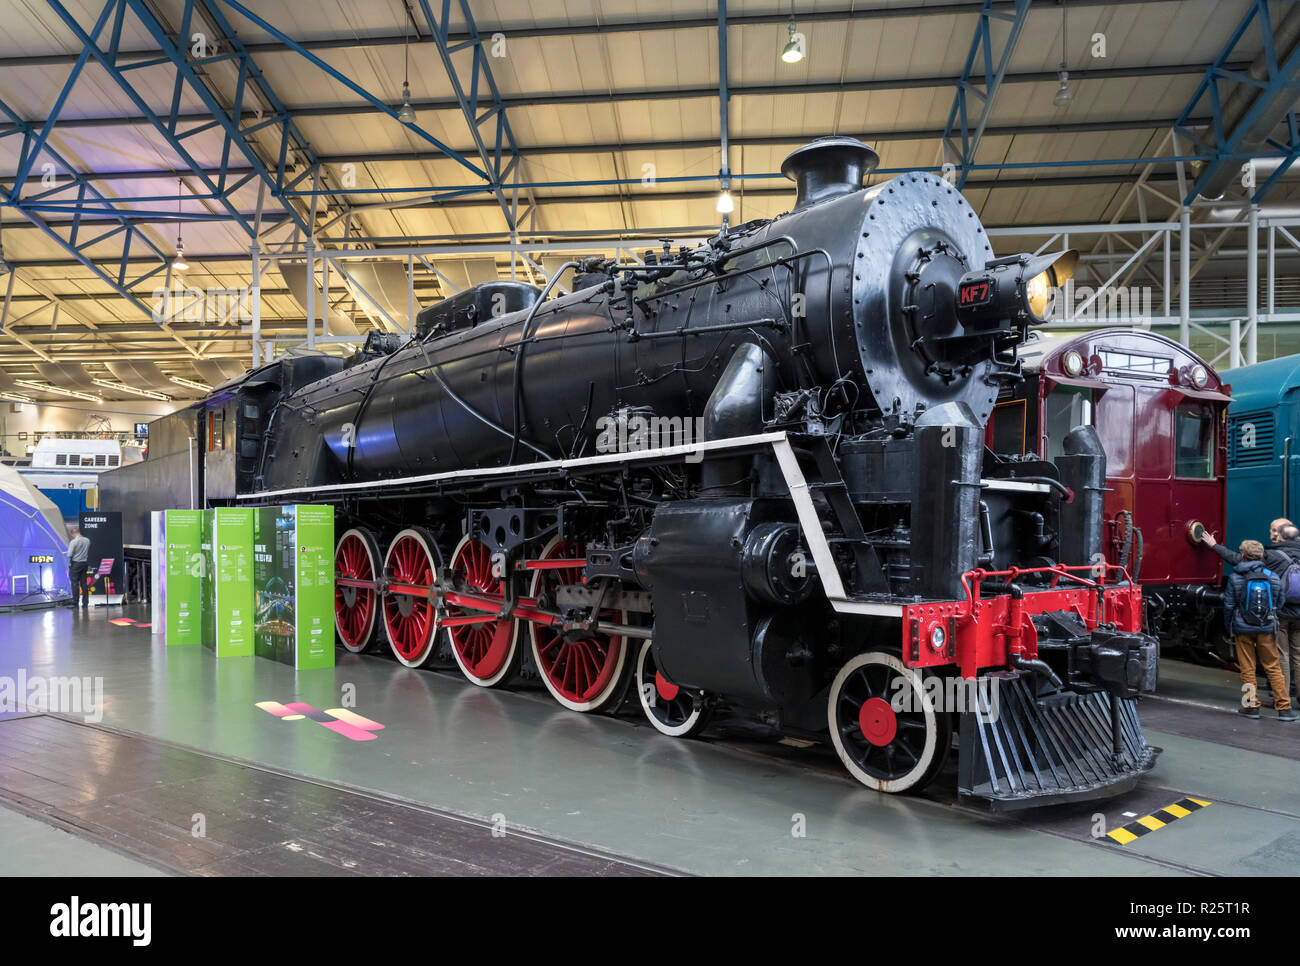 1935 KF7 locomotiva a vapore nella grande hall, il museo nazionale delle ferrovie, York, Inghilterra. La KF7 è uno dei più grandi locomotive a vapore costruita in Gran Bretagna. Foto Stock